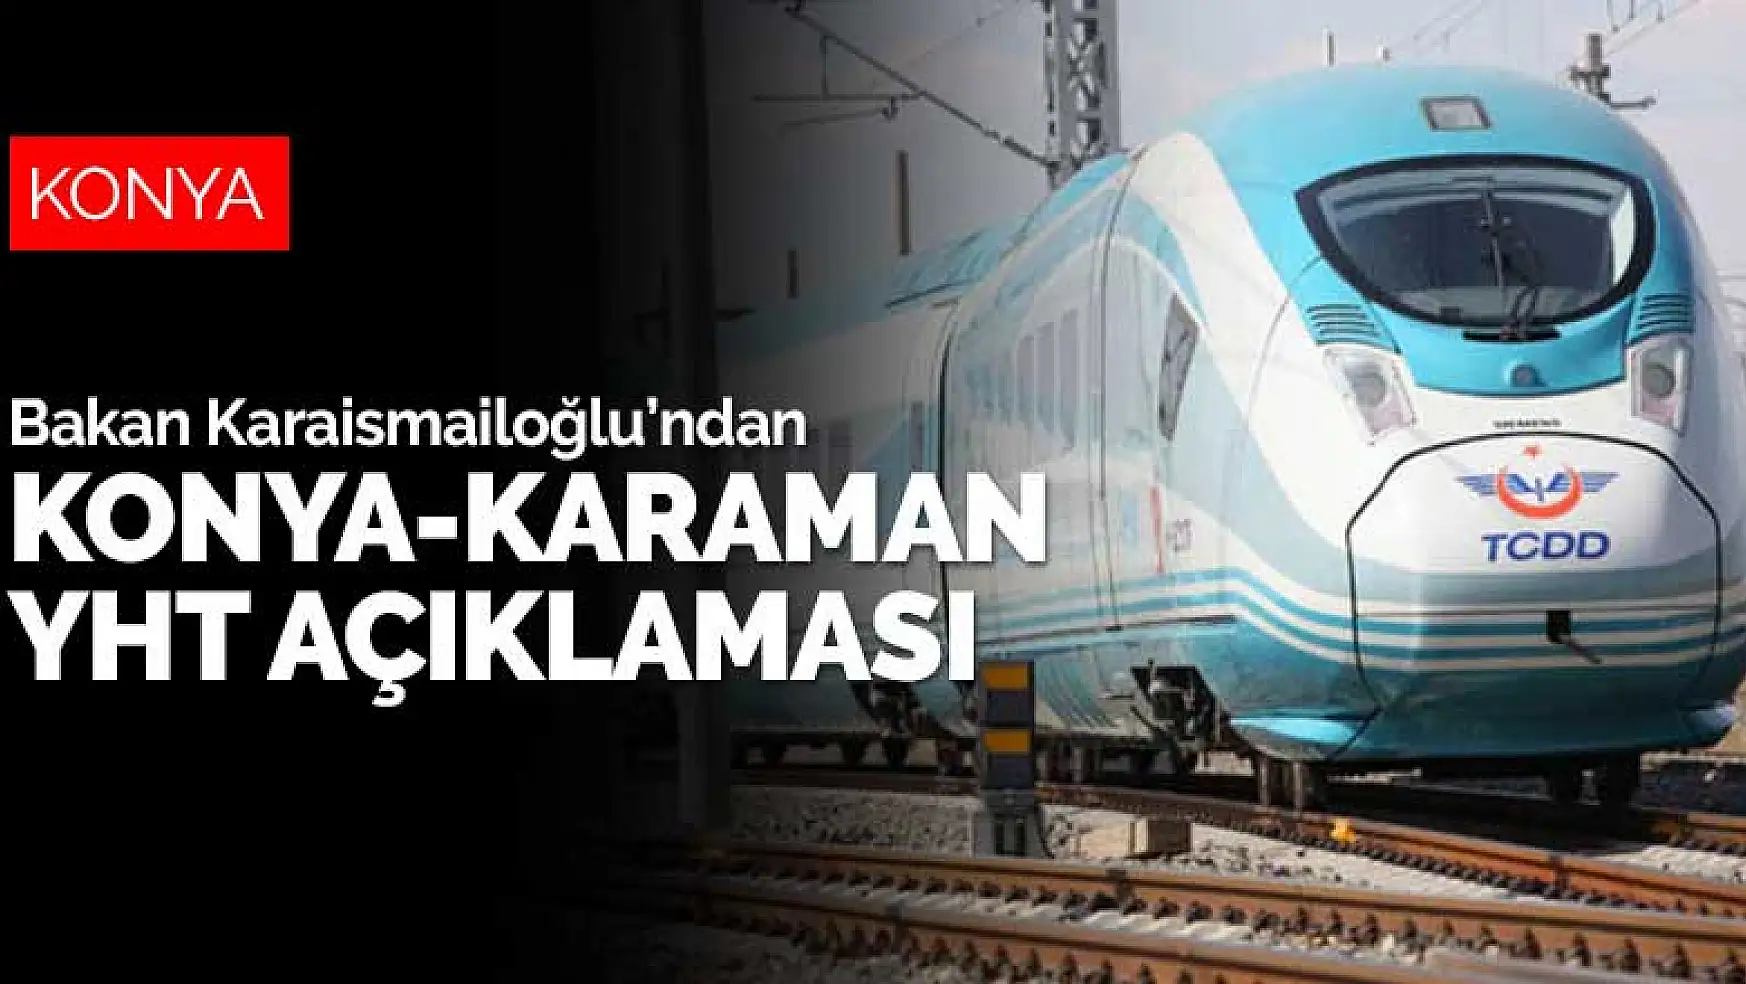 Bakan Karaismailoğlu'ndan Konya-Karaman YHT hattı ile ilgili açıklama